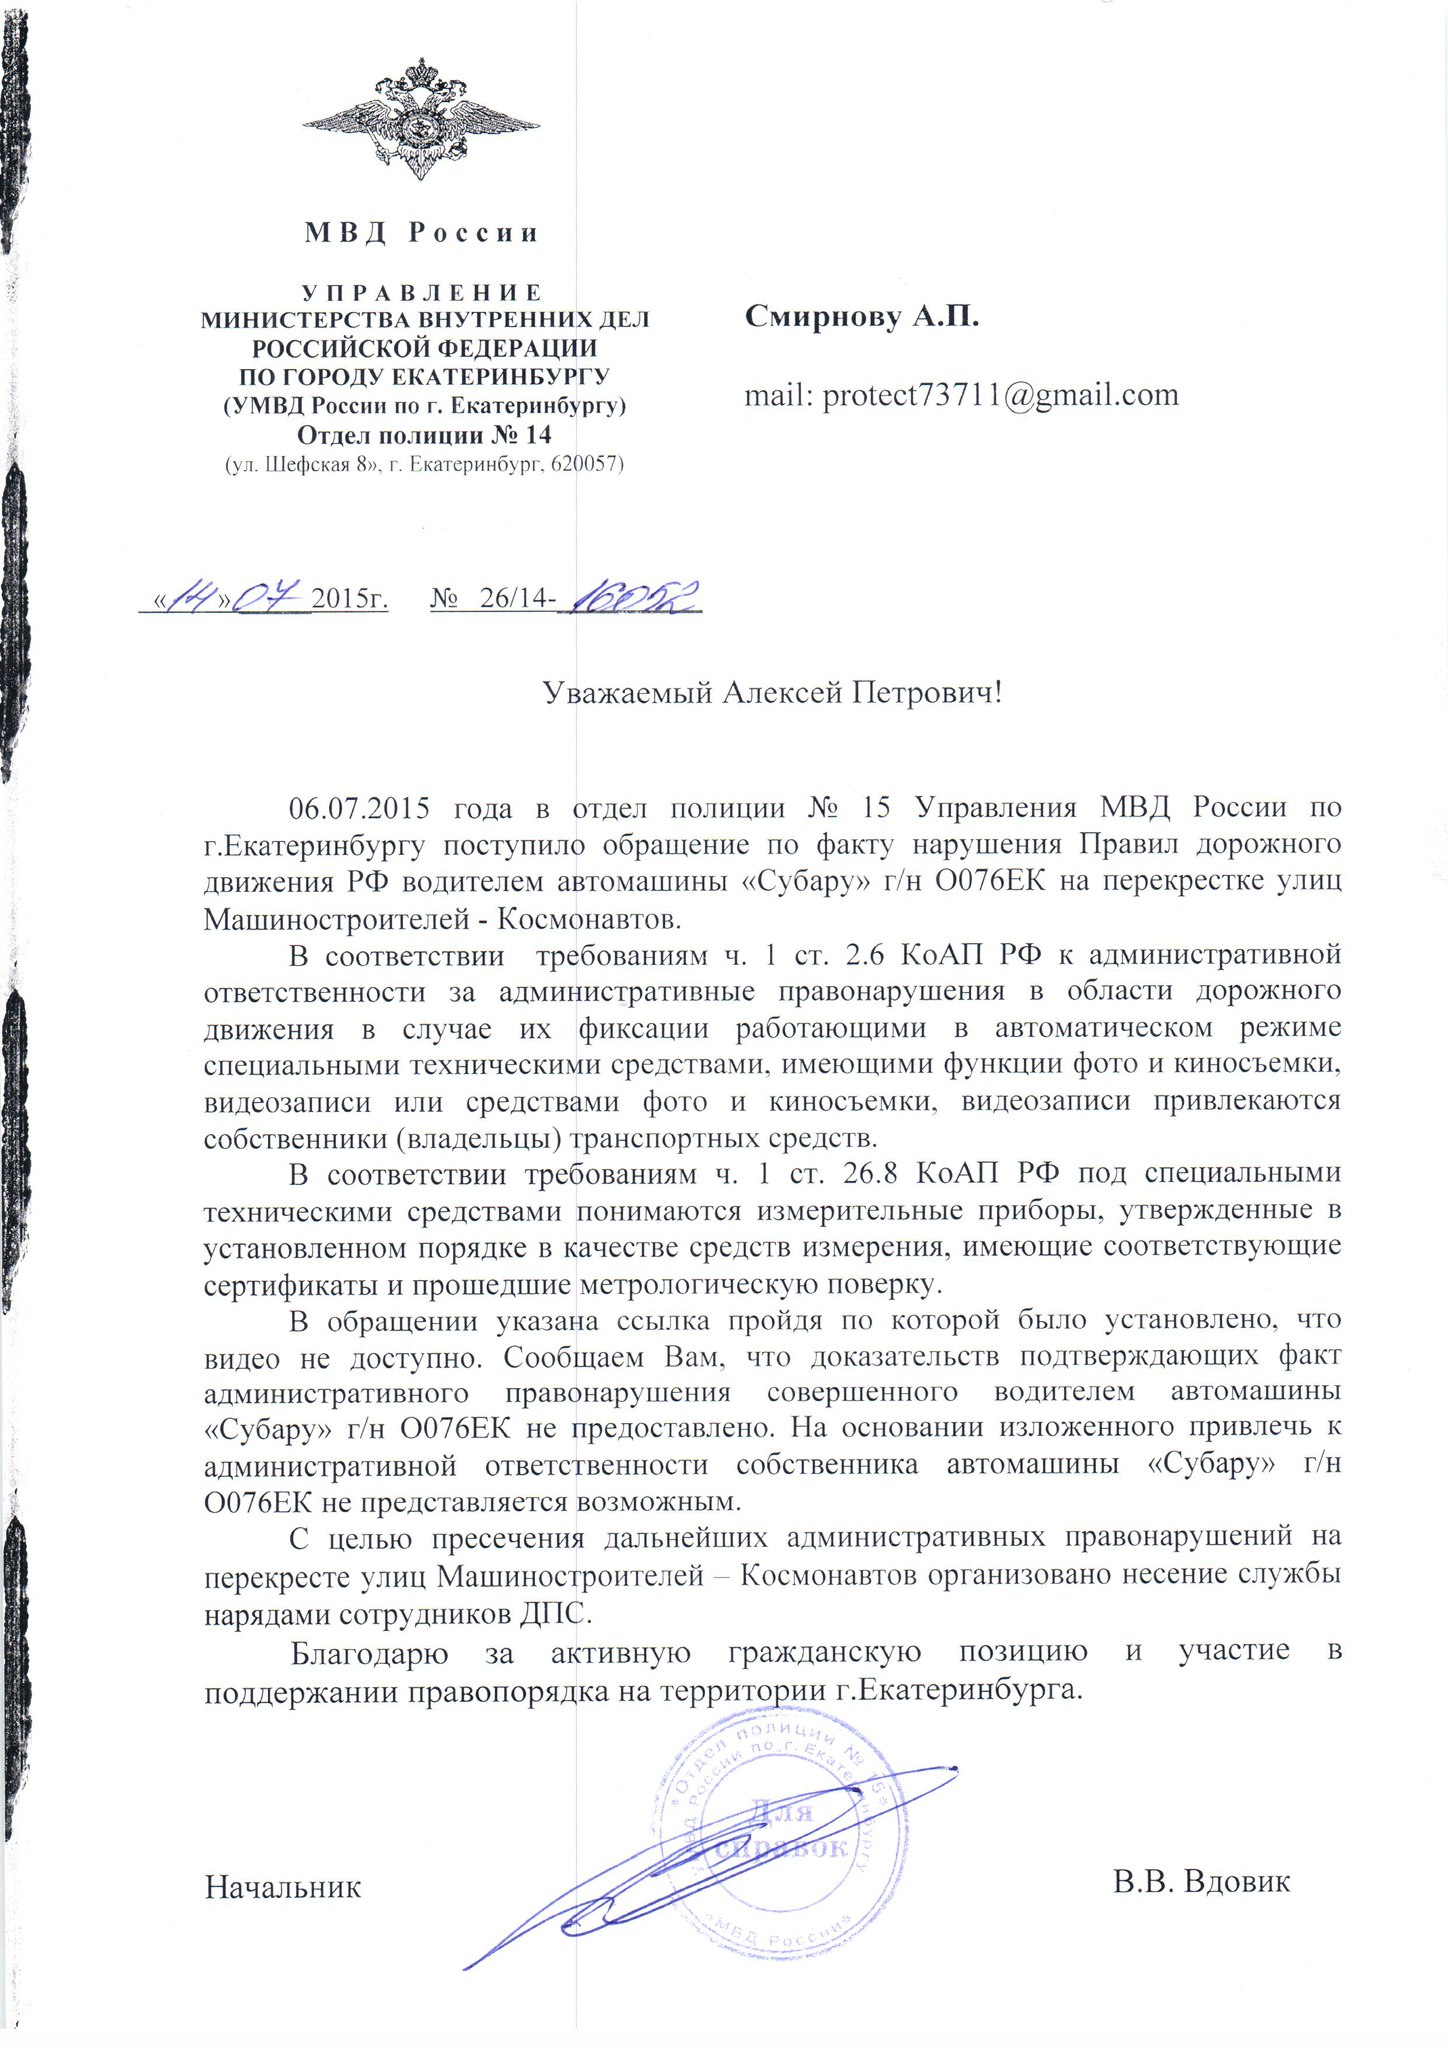 В Ростове выявлены факты распространения фальшивых счёт-квитанций 